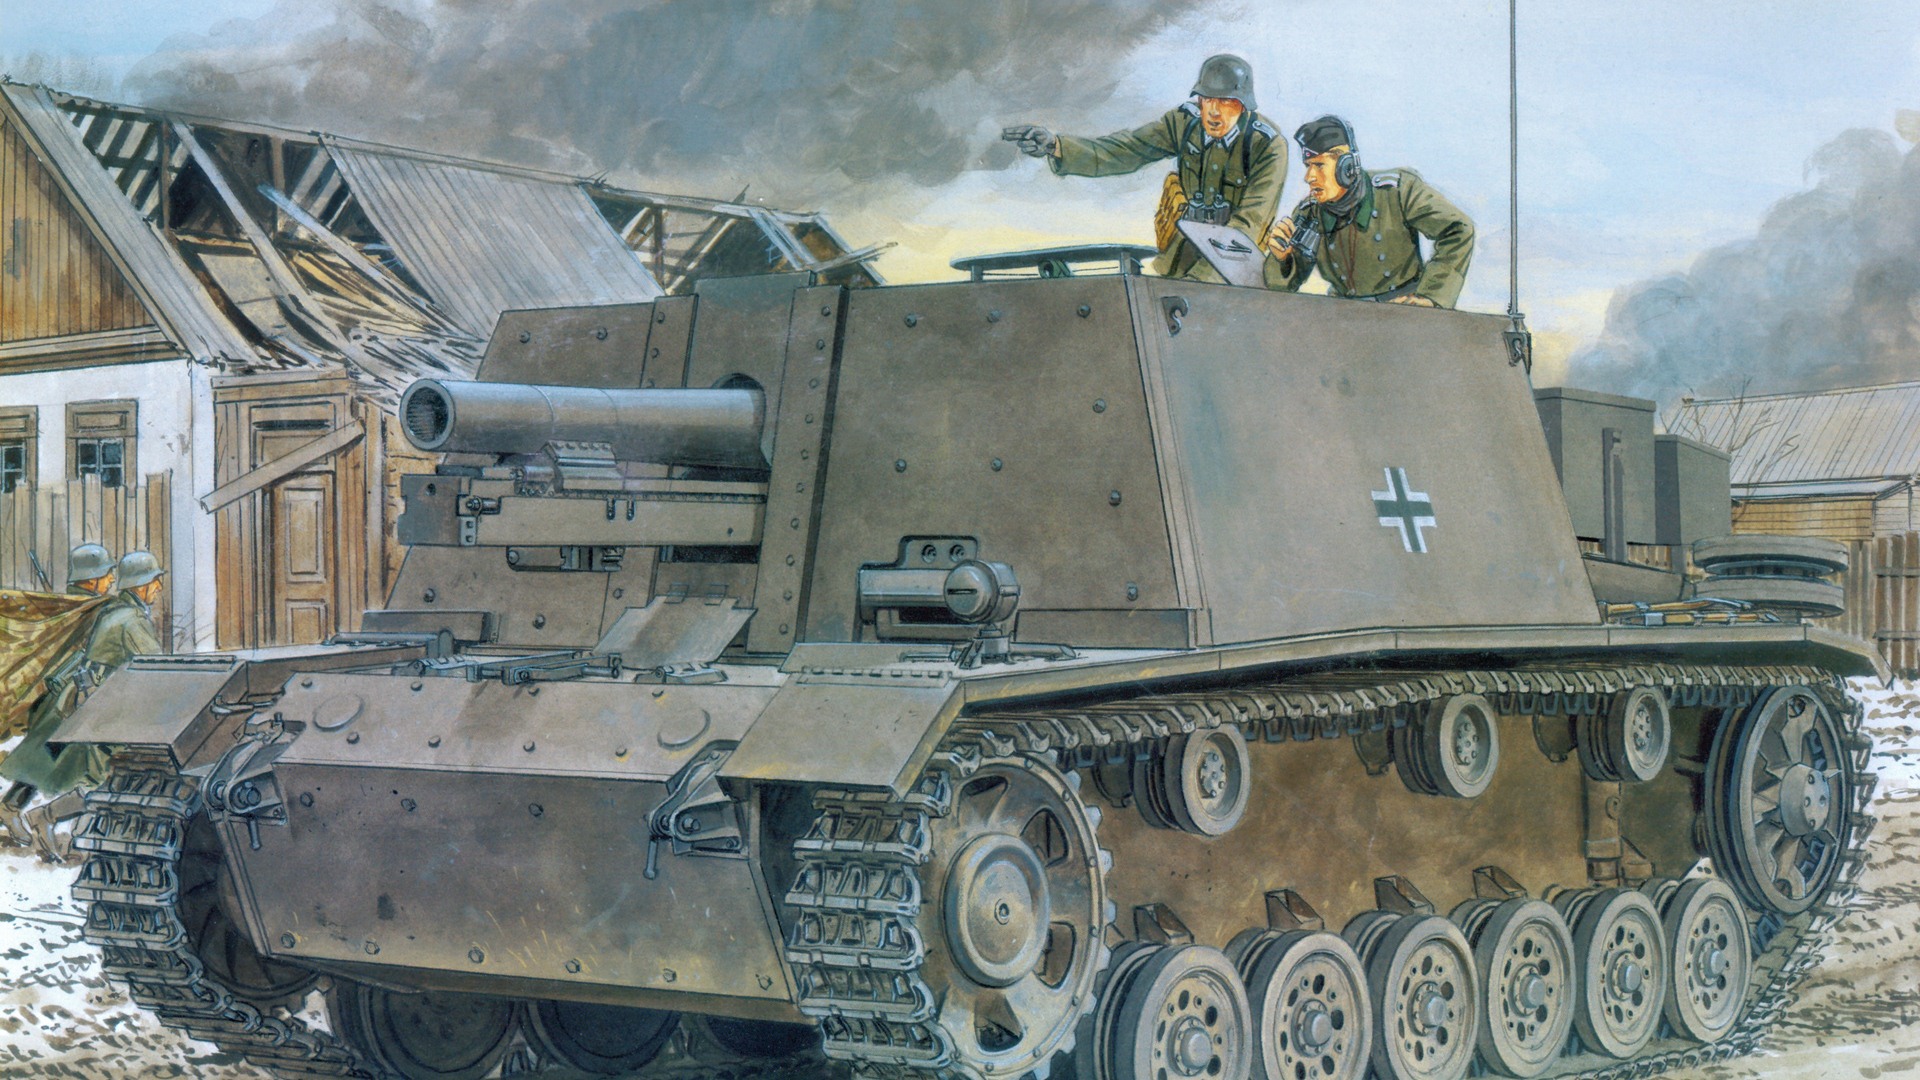 軍の戦車 装甲hdの絵画壁紙 12 19x1080 壁紙ダウンロード 軍の戦車 装甲hdの絵画壁紙 ミリタリー 壁紙 V3の壁紙